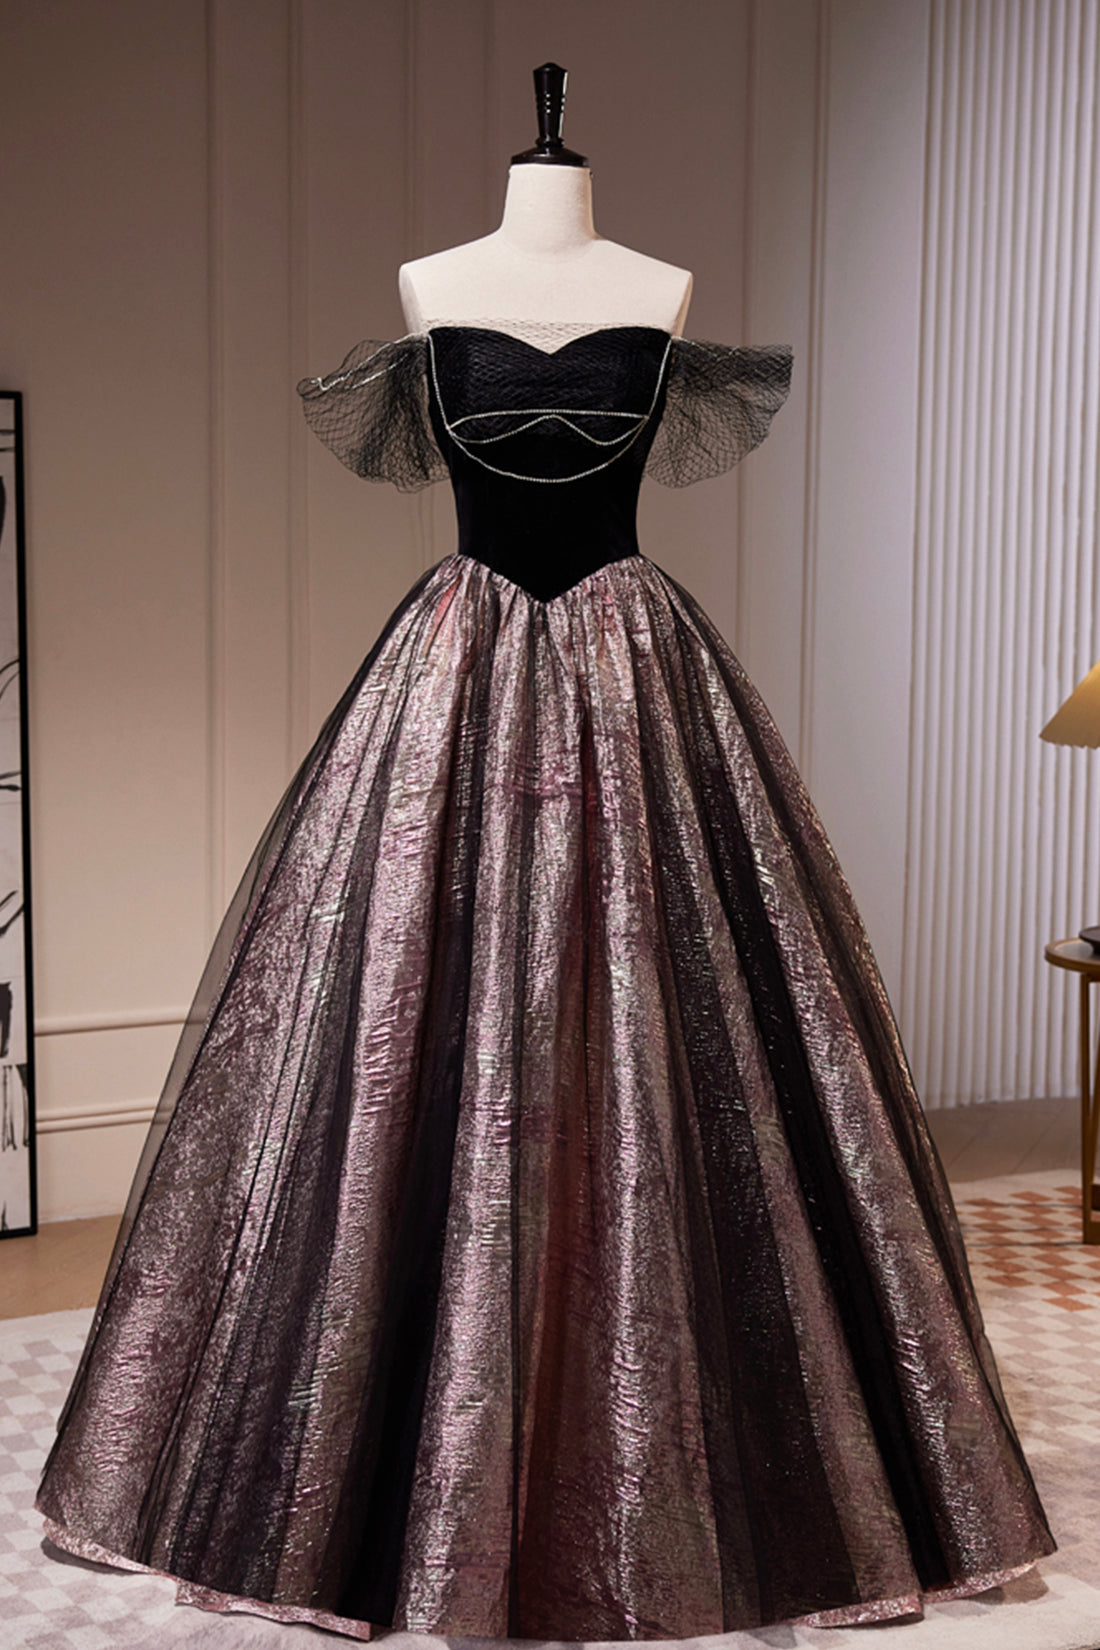 Black Satin Tulle Long Prom Dress, A-Line Off Shoulder Evening Dress Formal Dress